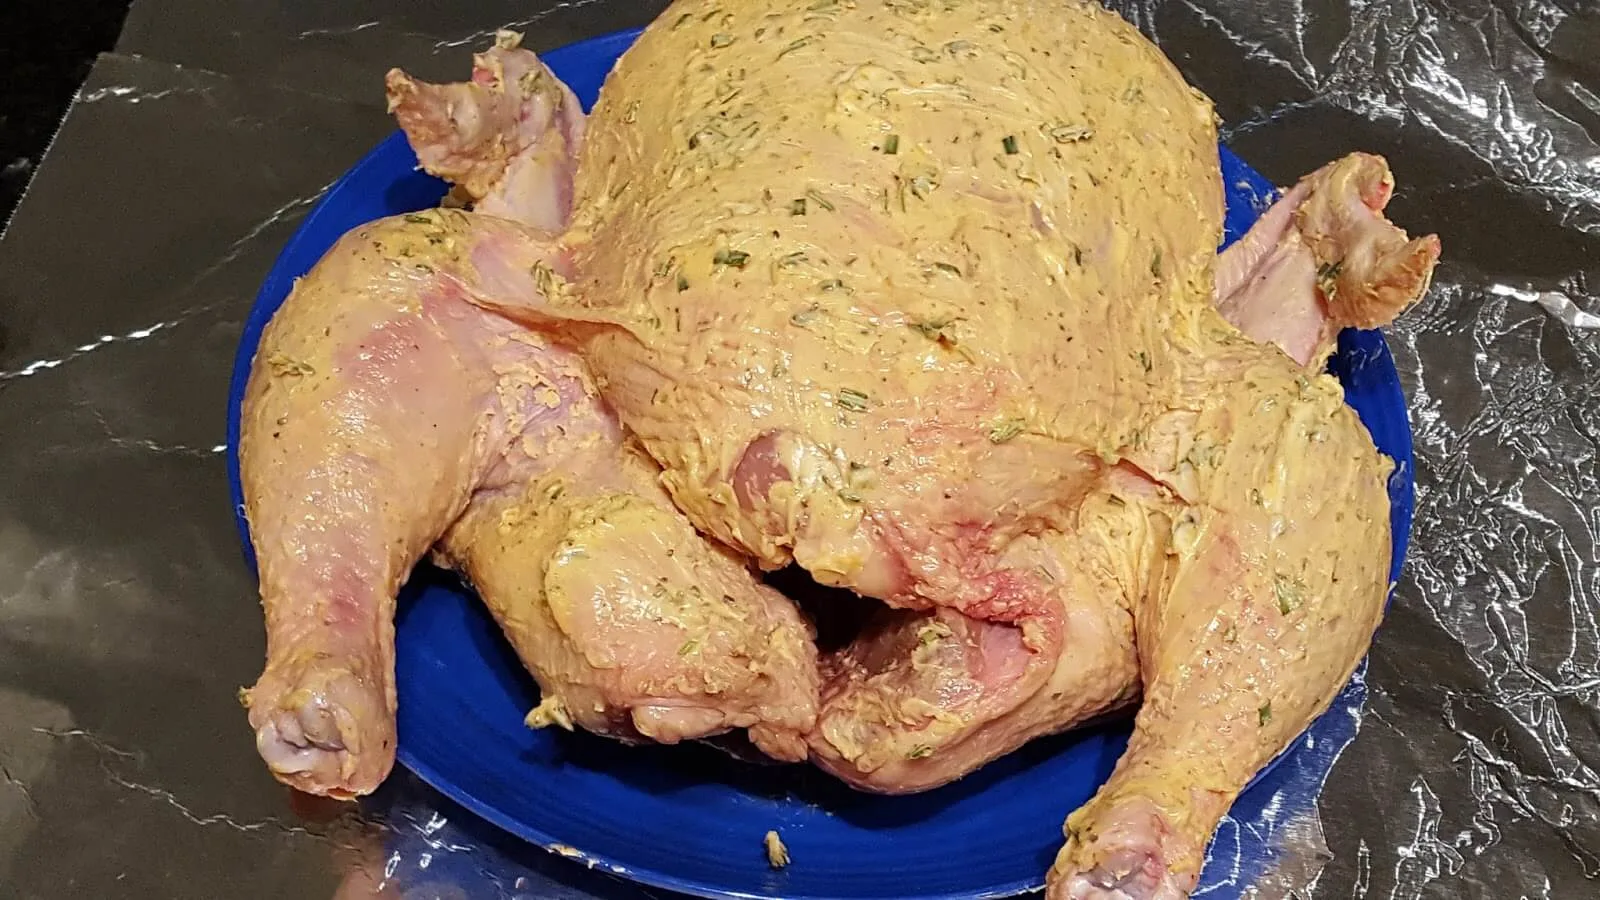 Preparing a chicken to roast